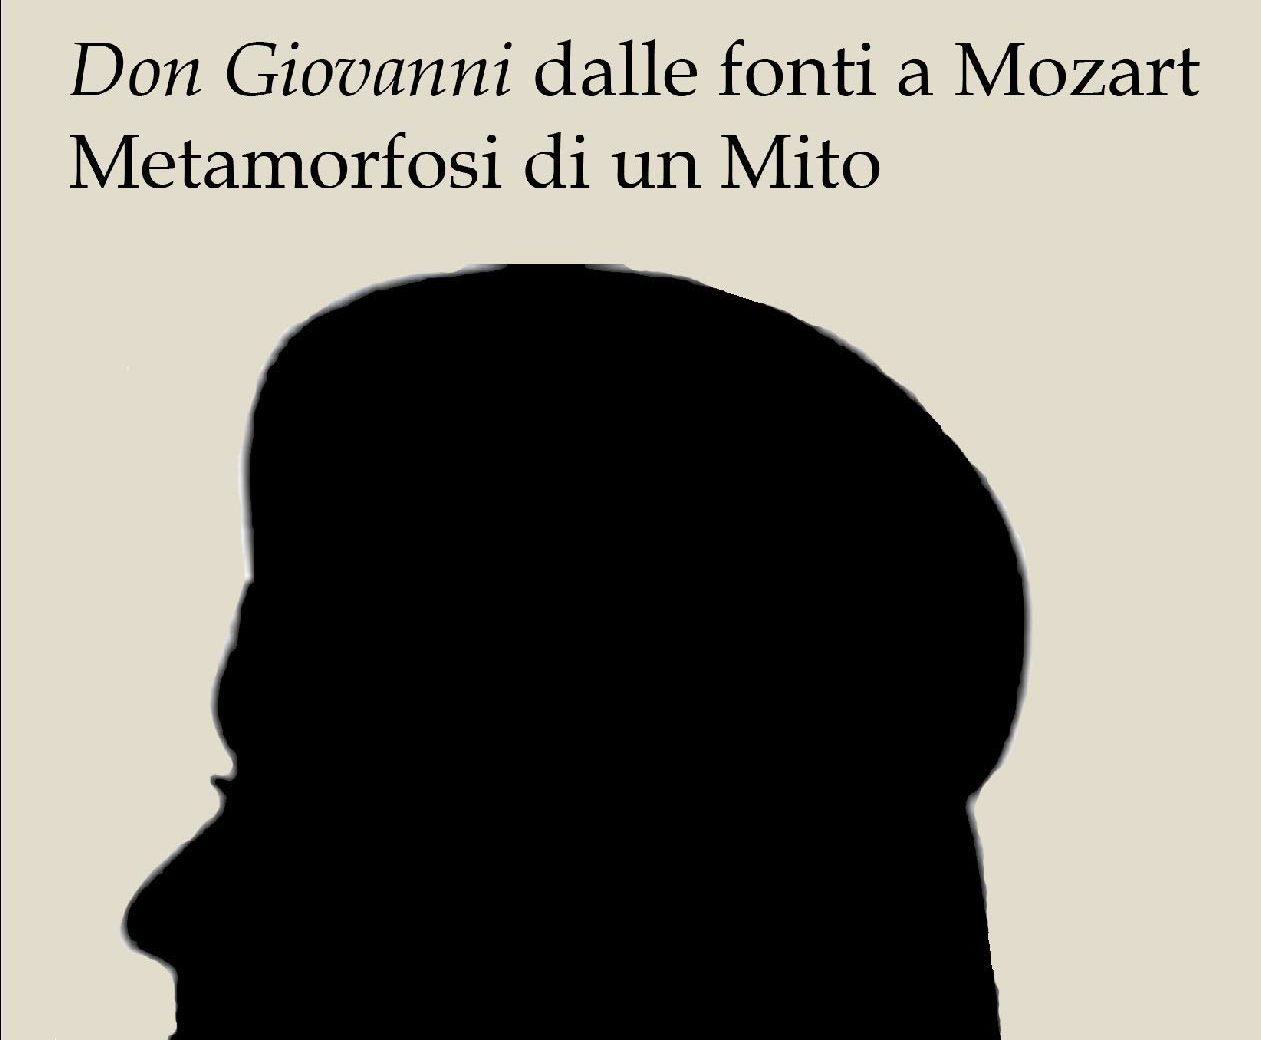 Don Giovanni dalle fonti a Mozart